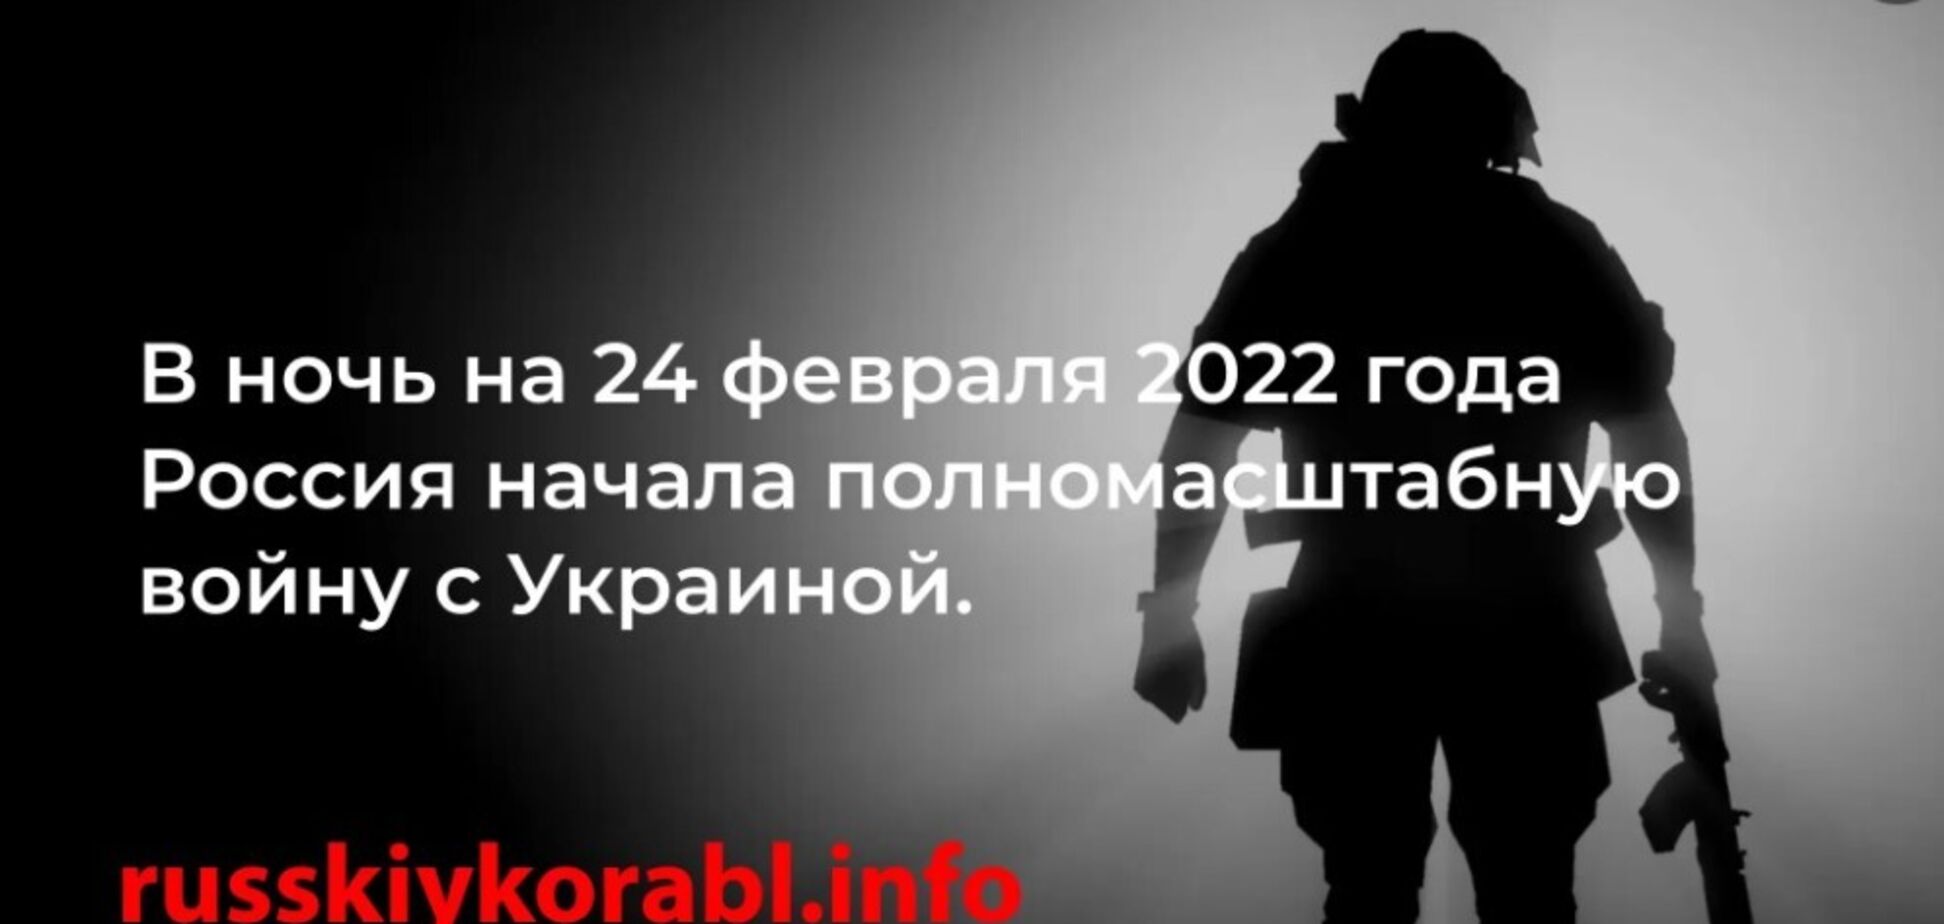 Правда о войне: для граждан России создали сайт со статистикой военных преступлений и потерь армии РФ в Украине